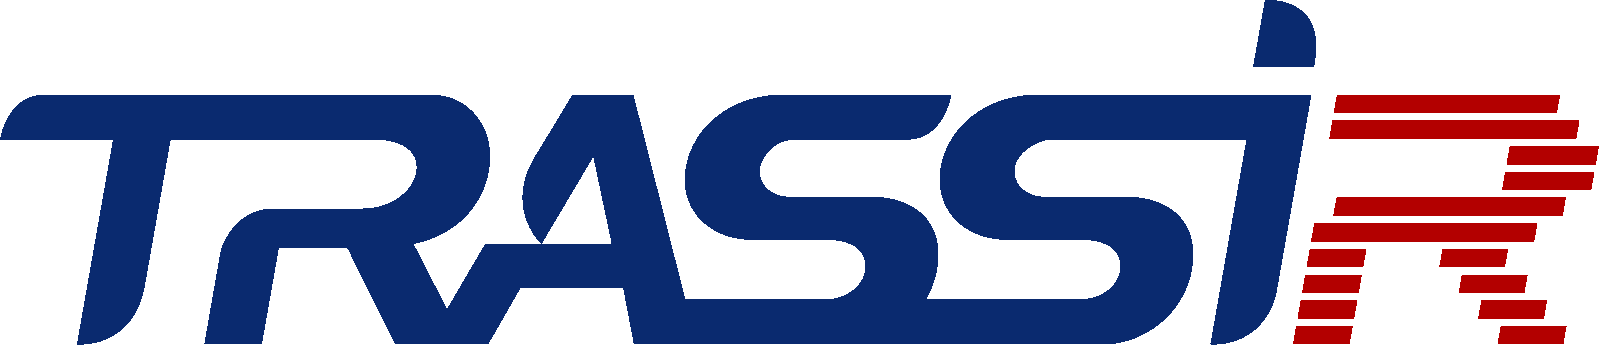 TRASSIR-logo-2016